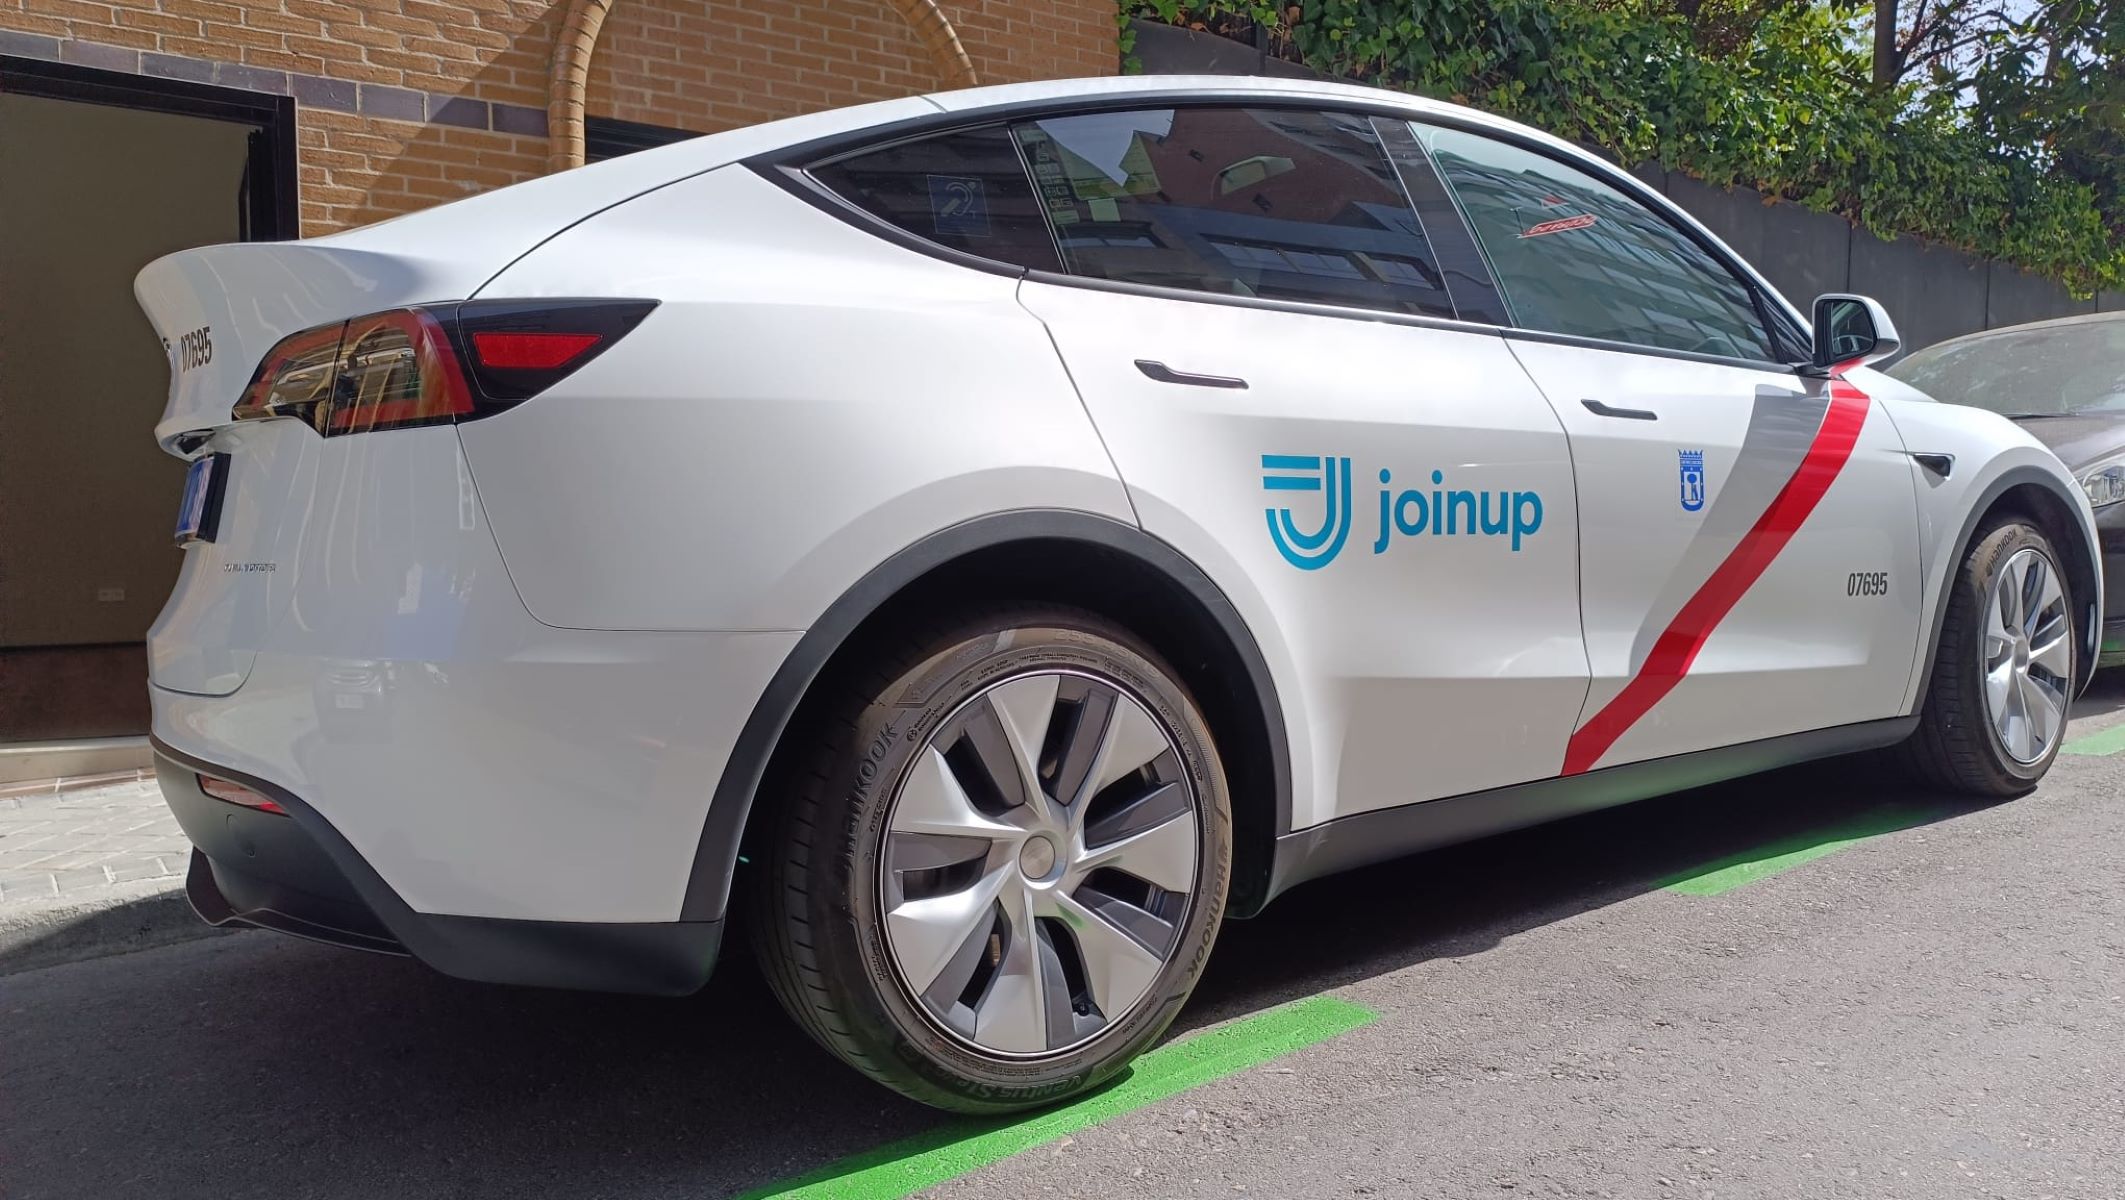 Joinup quiere facilitar la transición del taxi hacia la electrificación.